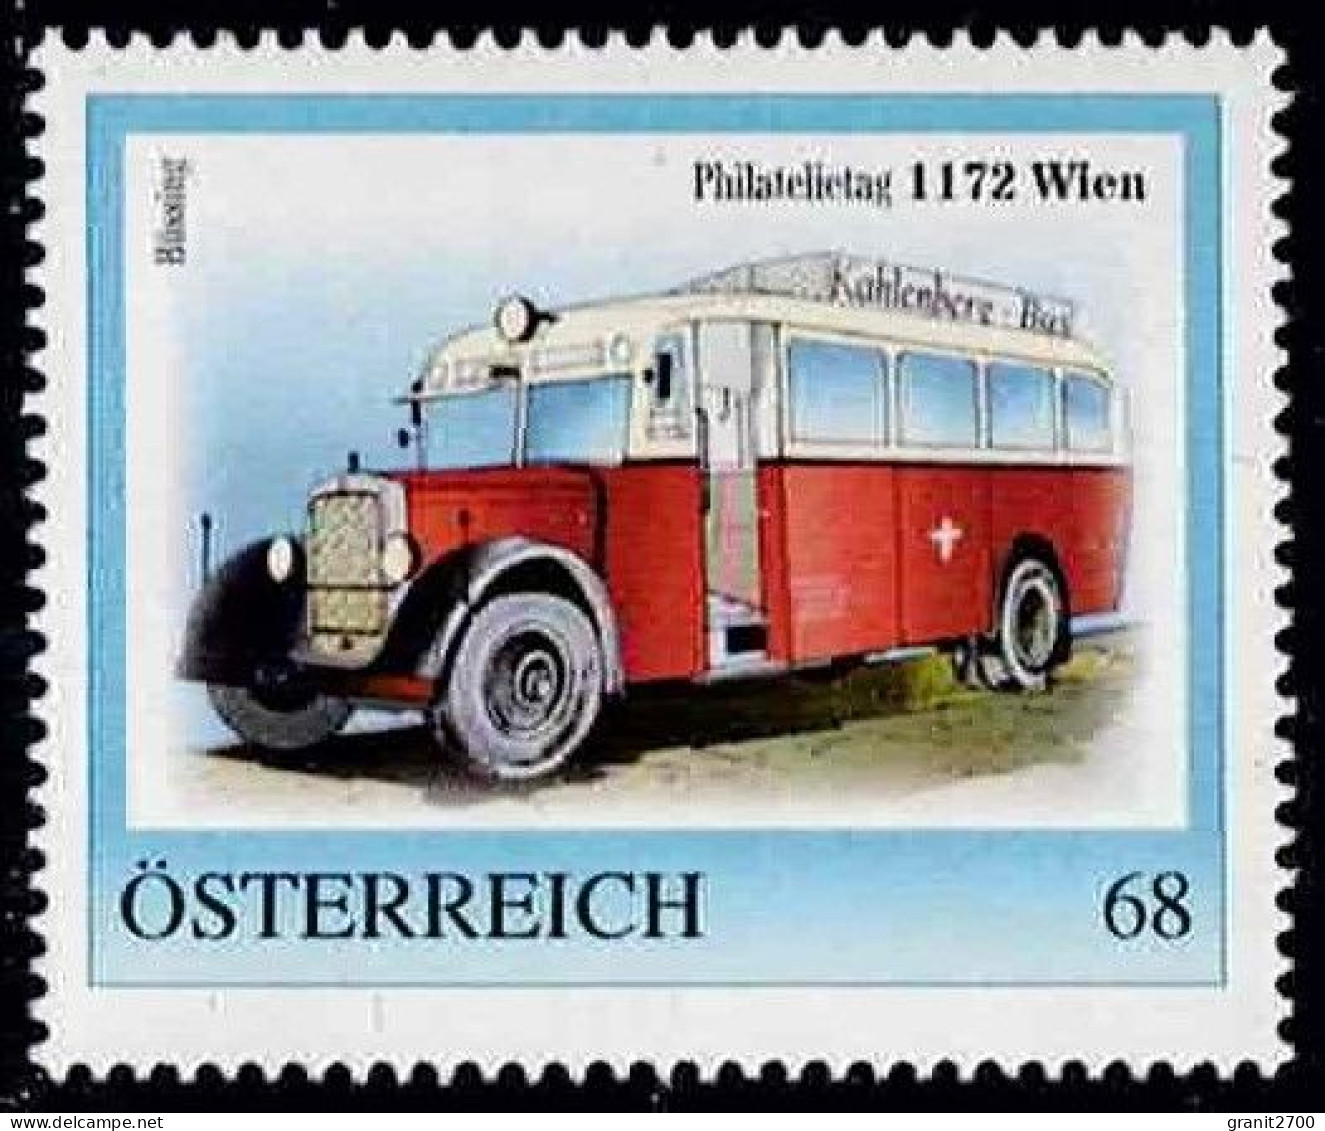 PM  Philatelietag 1172 Wien Ex Bogen Nr.  8122525  Vom 16.5.2017 Postfrisch - Personnalized Stamps